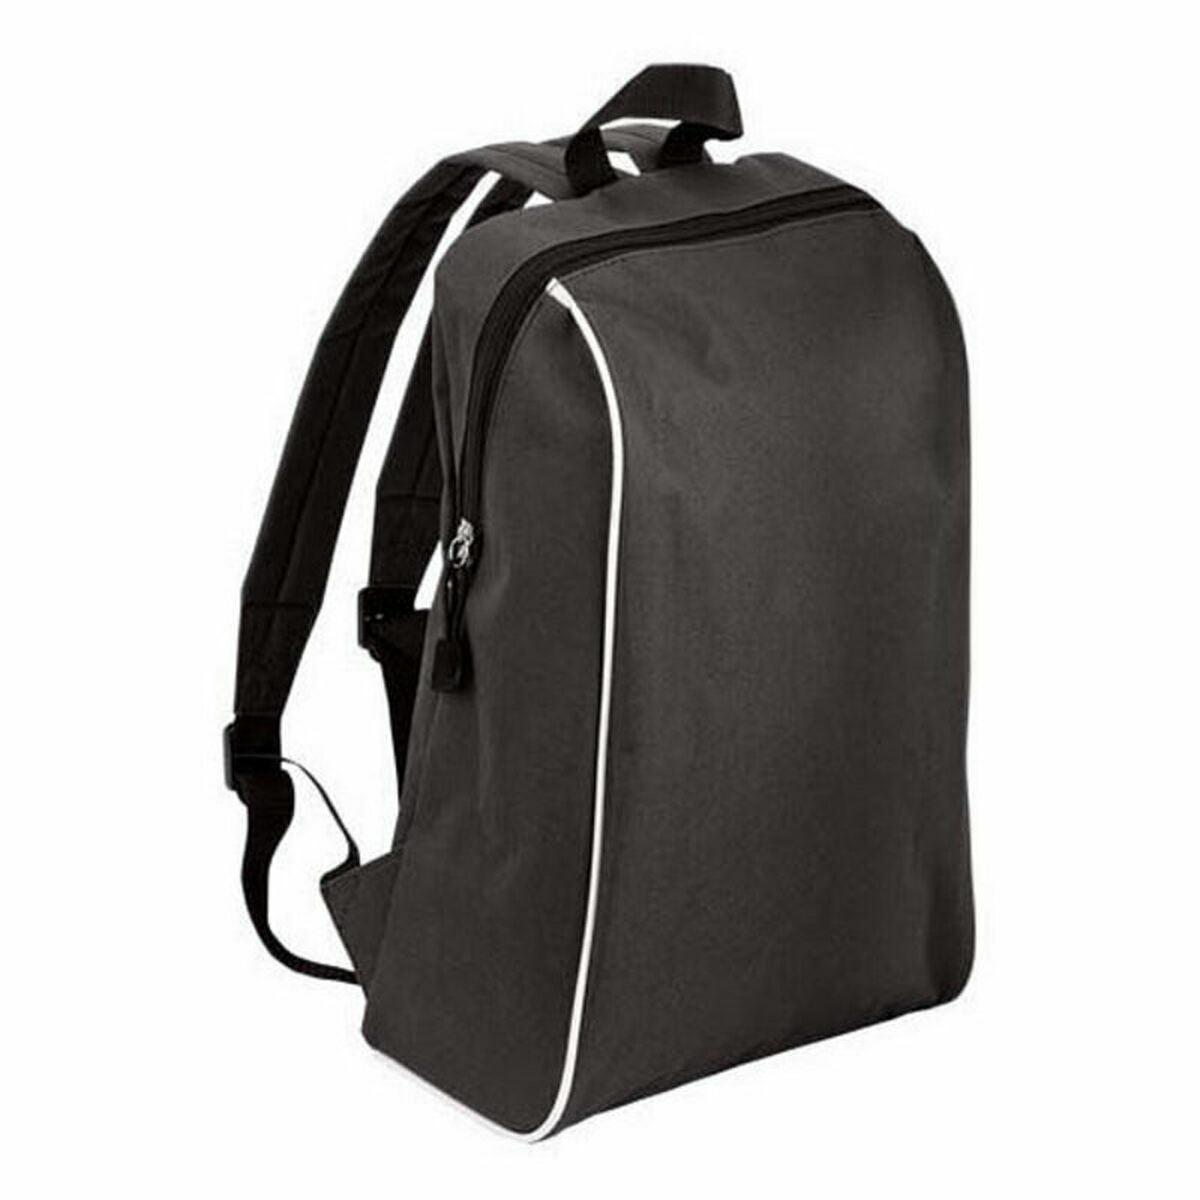 Multipurpose Backpack Walk Genie 143324 (50 Units)